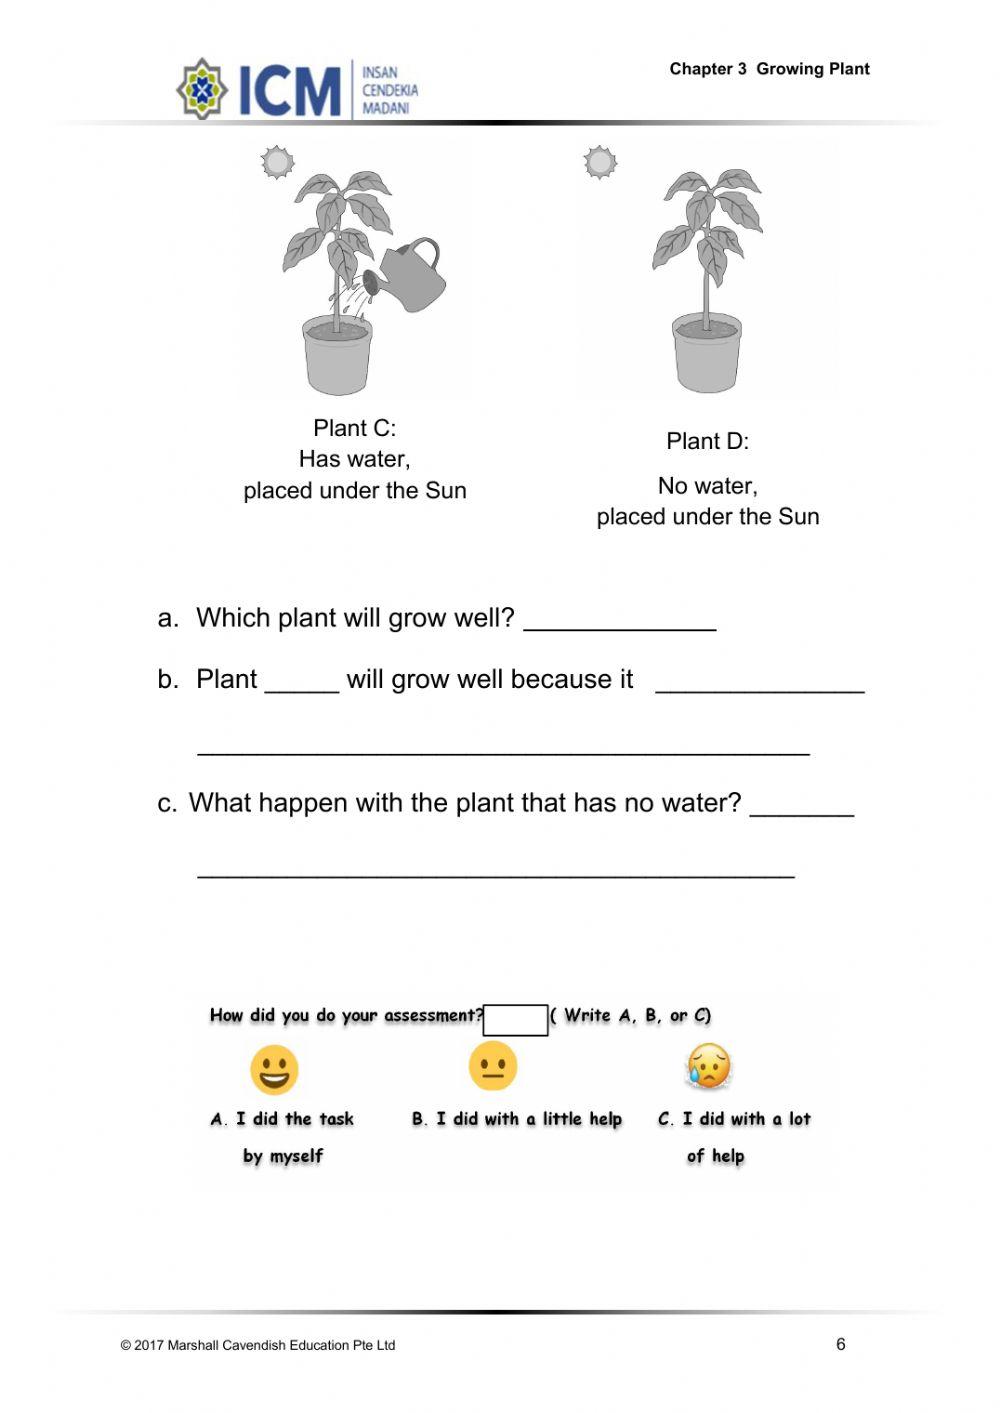 Unit 3 : Growing Plant